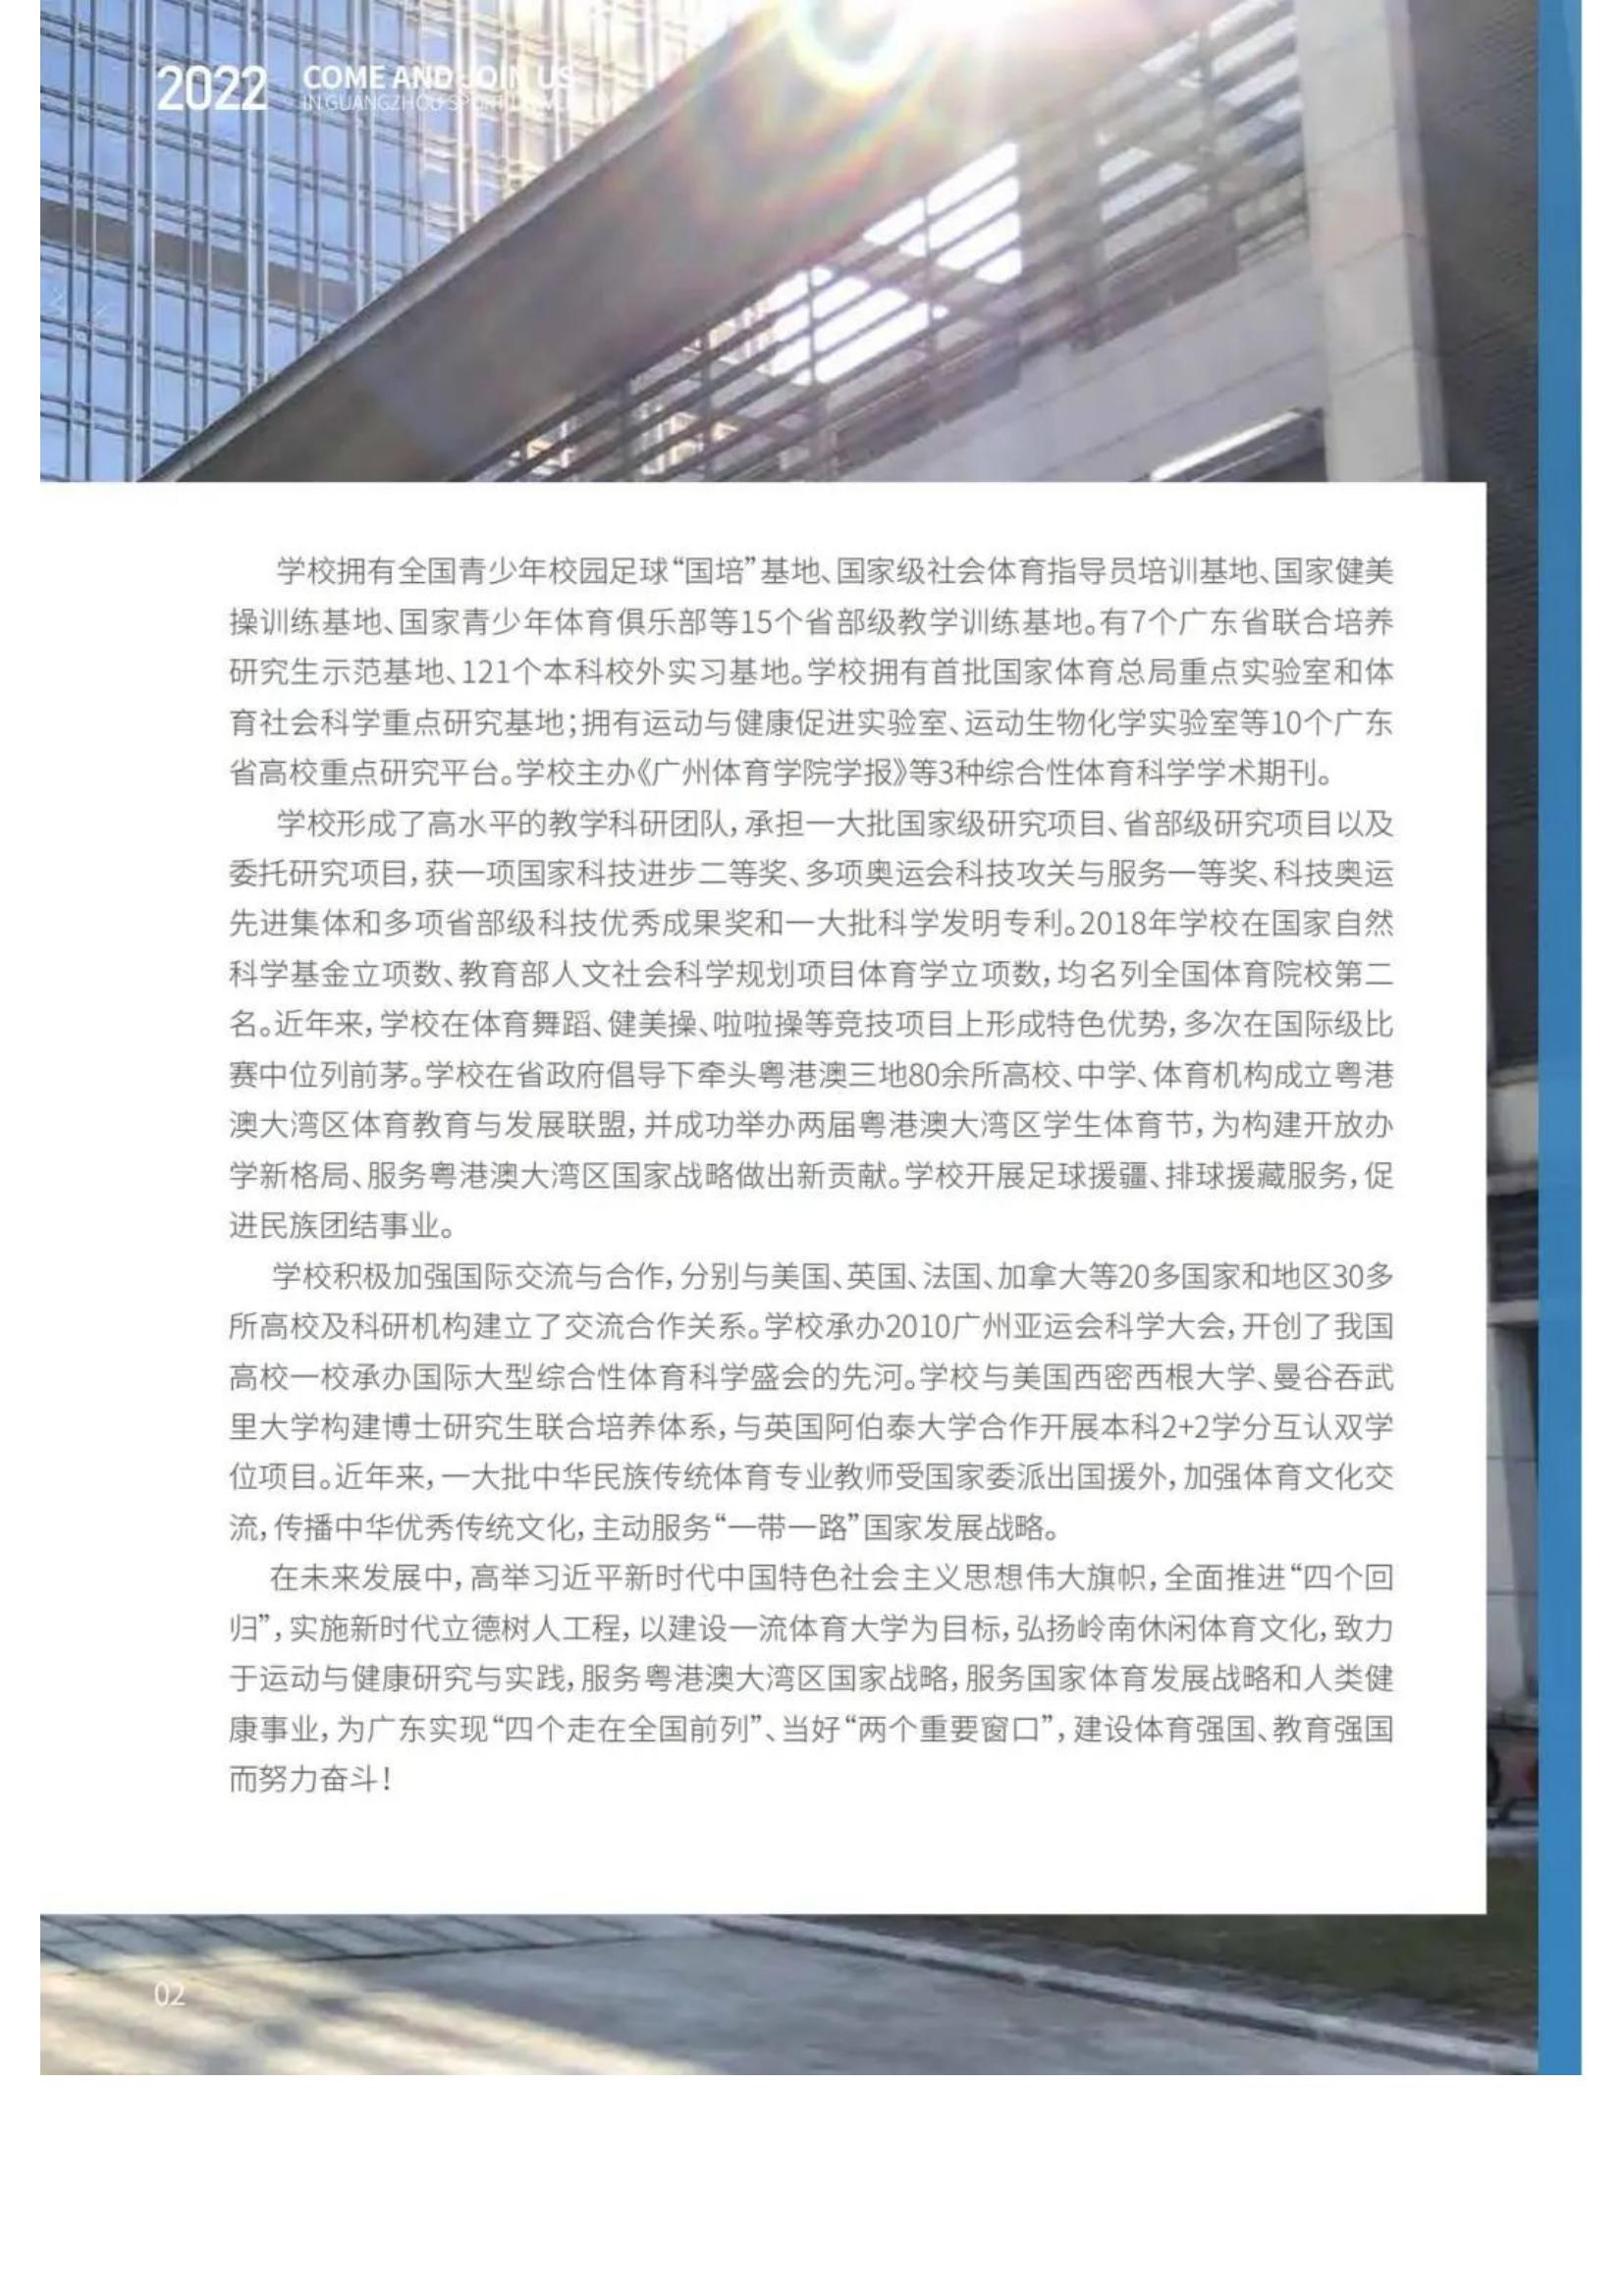 广州体育学院2022年报考指南发布_04.jpg